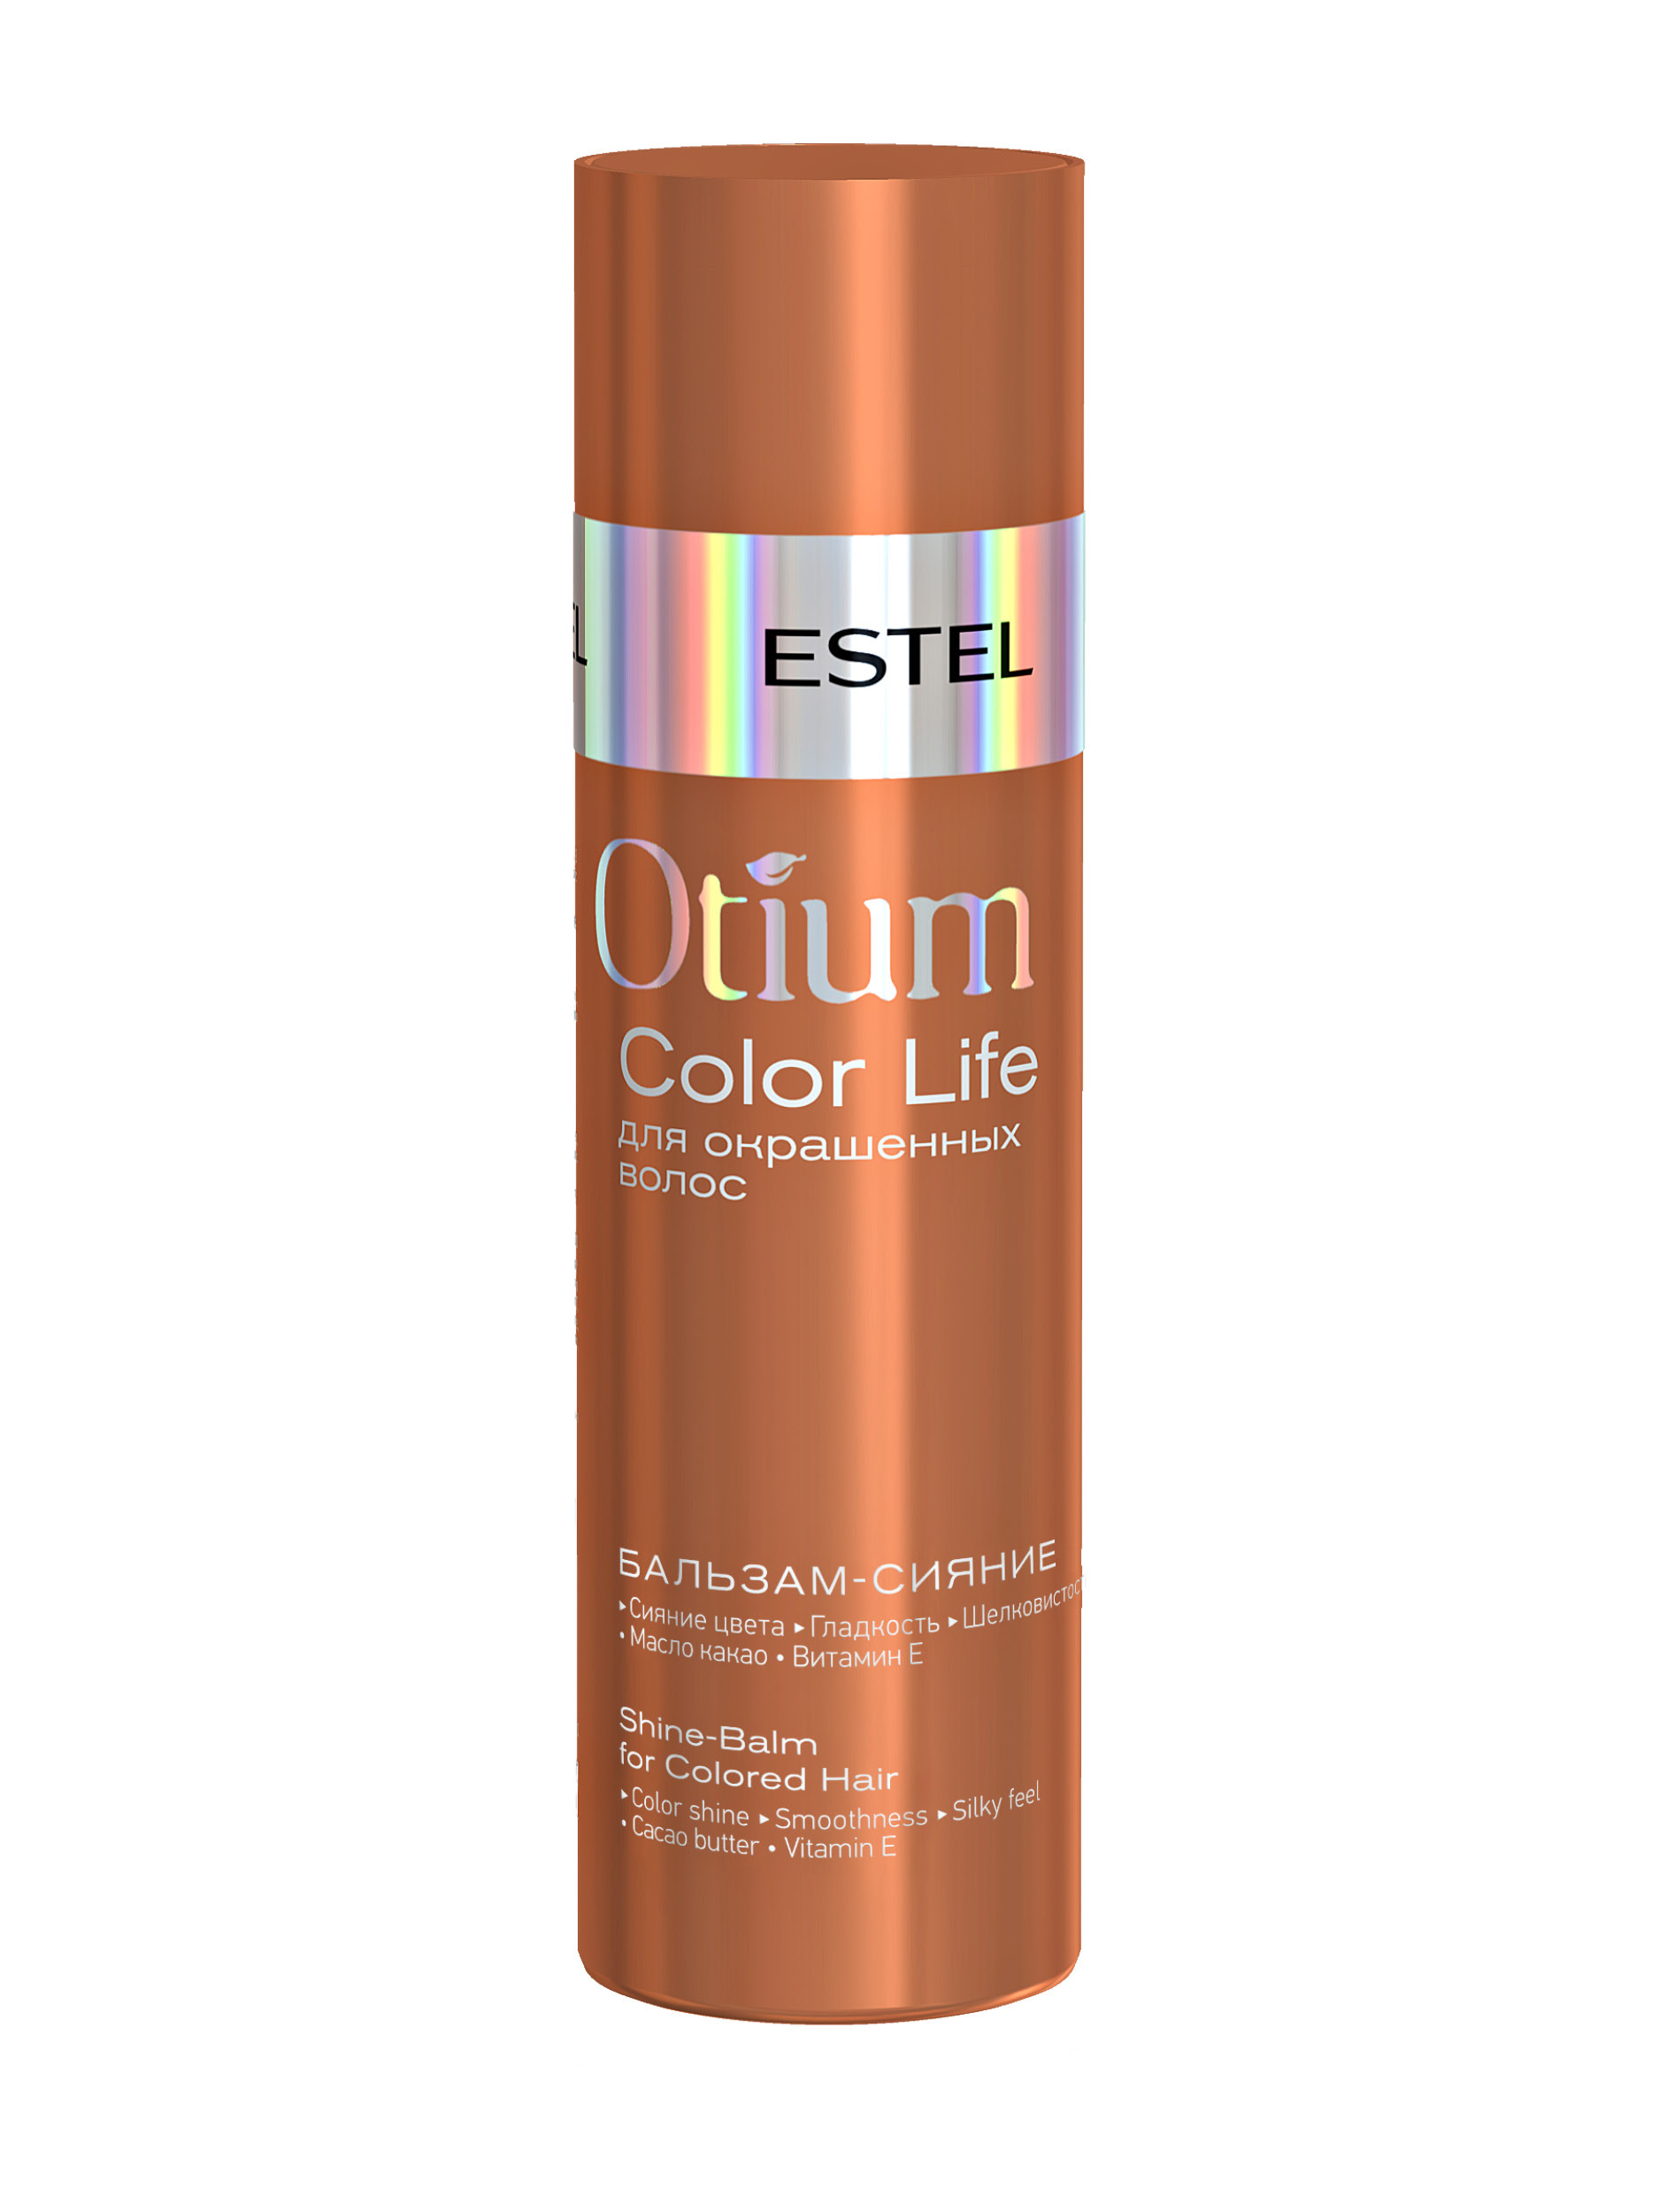 Otium color life. Деликатный шампунь для окрашенных волос Otium Color Life (1000 мл). Estel Otium Color Life шампунь. Деликатный шампунь Color Life для окрашенных волос 250. Estel бальзам сияние Otium Color Life для окрашенных волос 200мл.